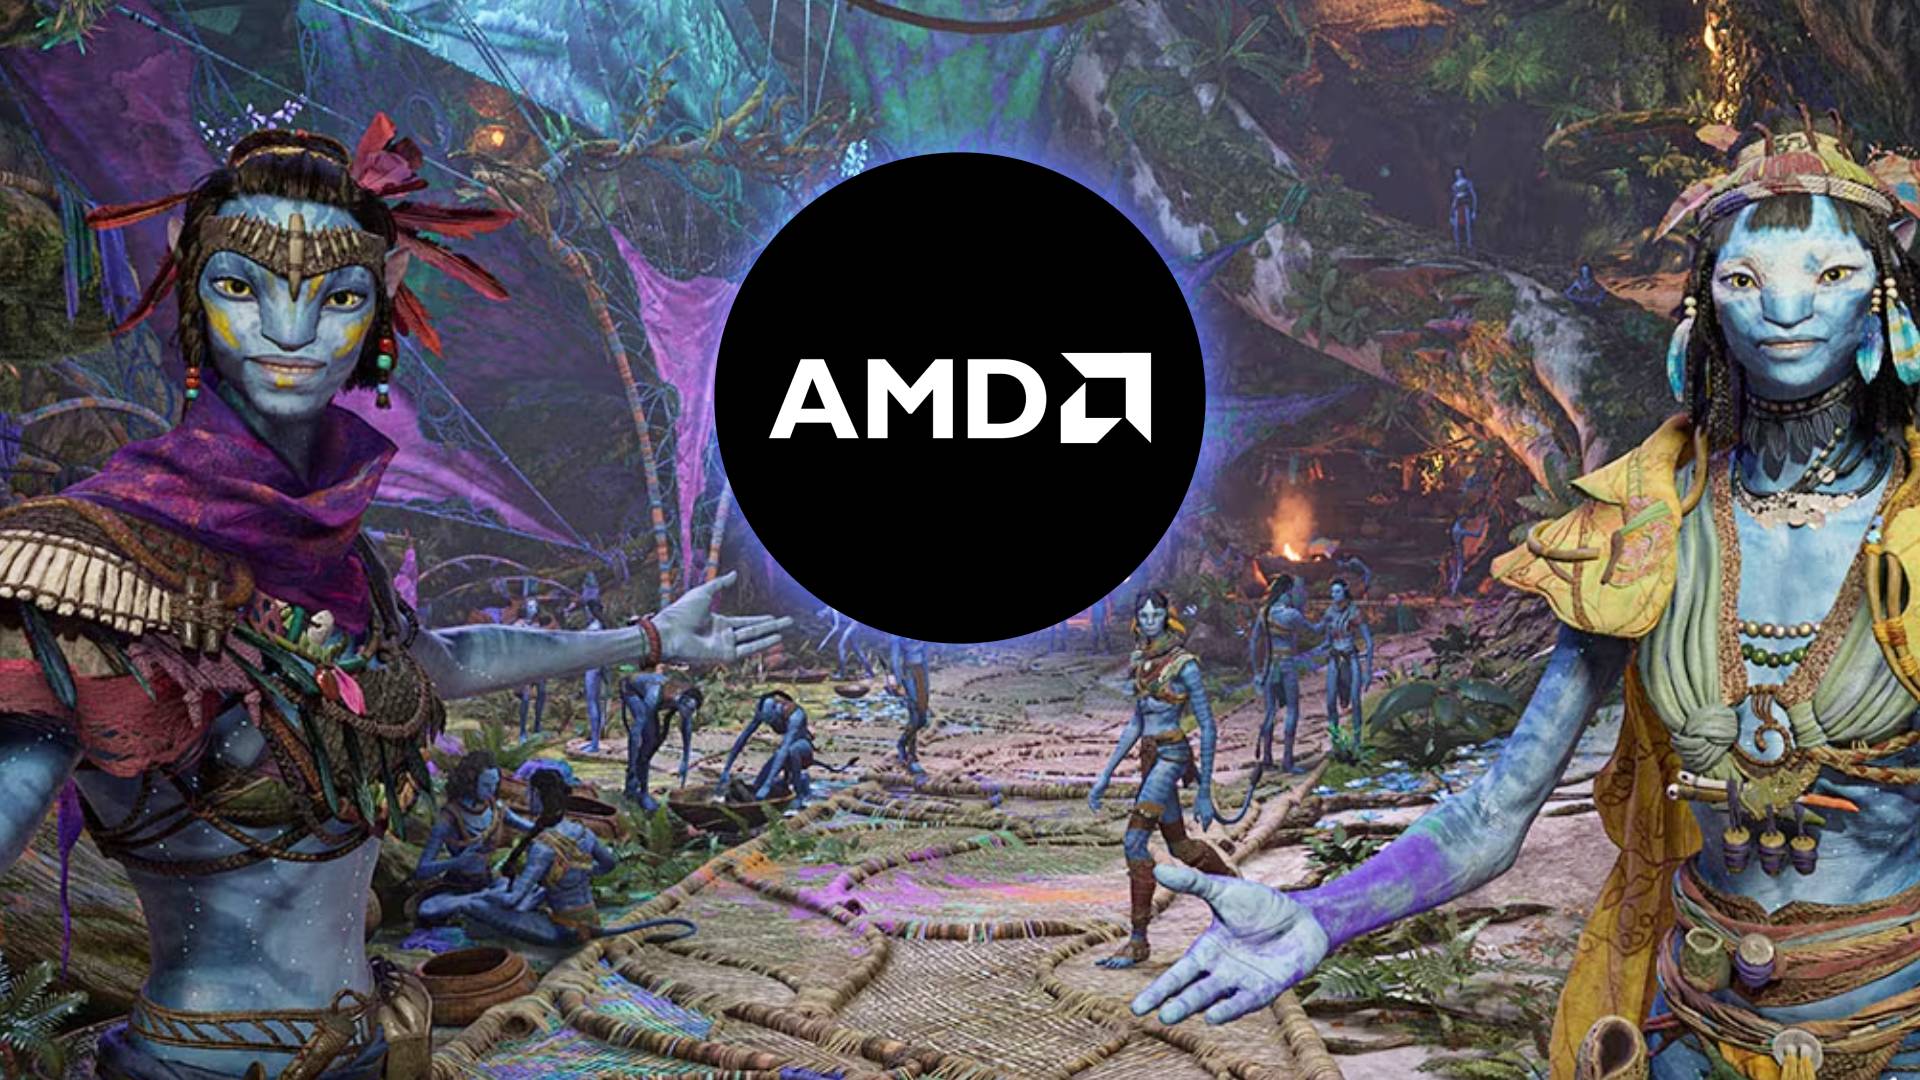 AMD sayesinde Avatar Frontiers of Pandora'yı ücretsiz edinin - Dünyadan Güncel Teknoloji Haberleri